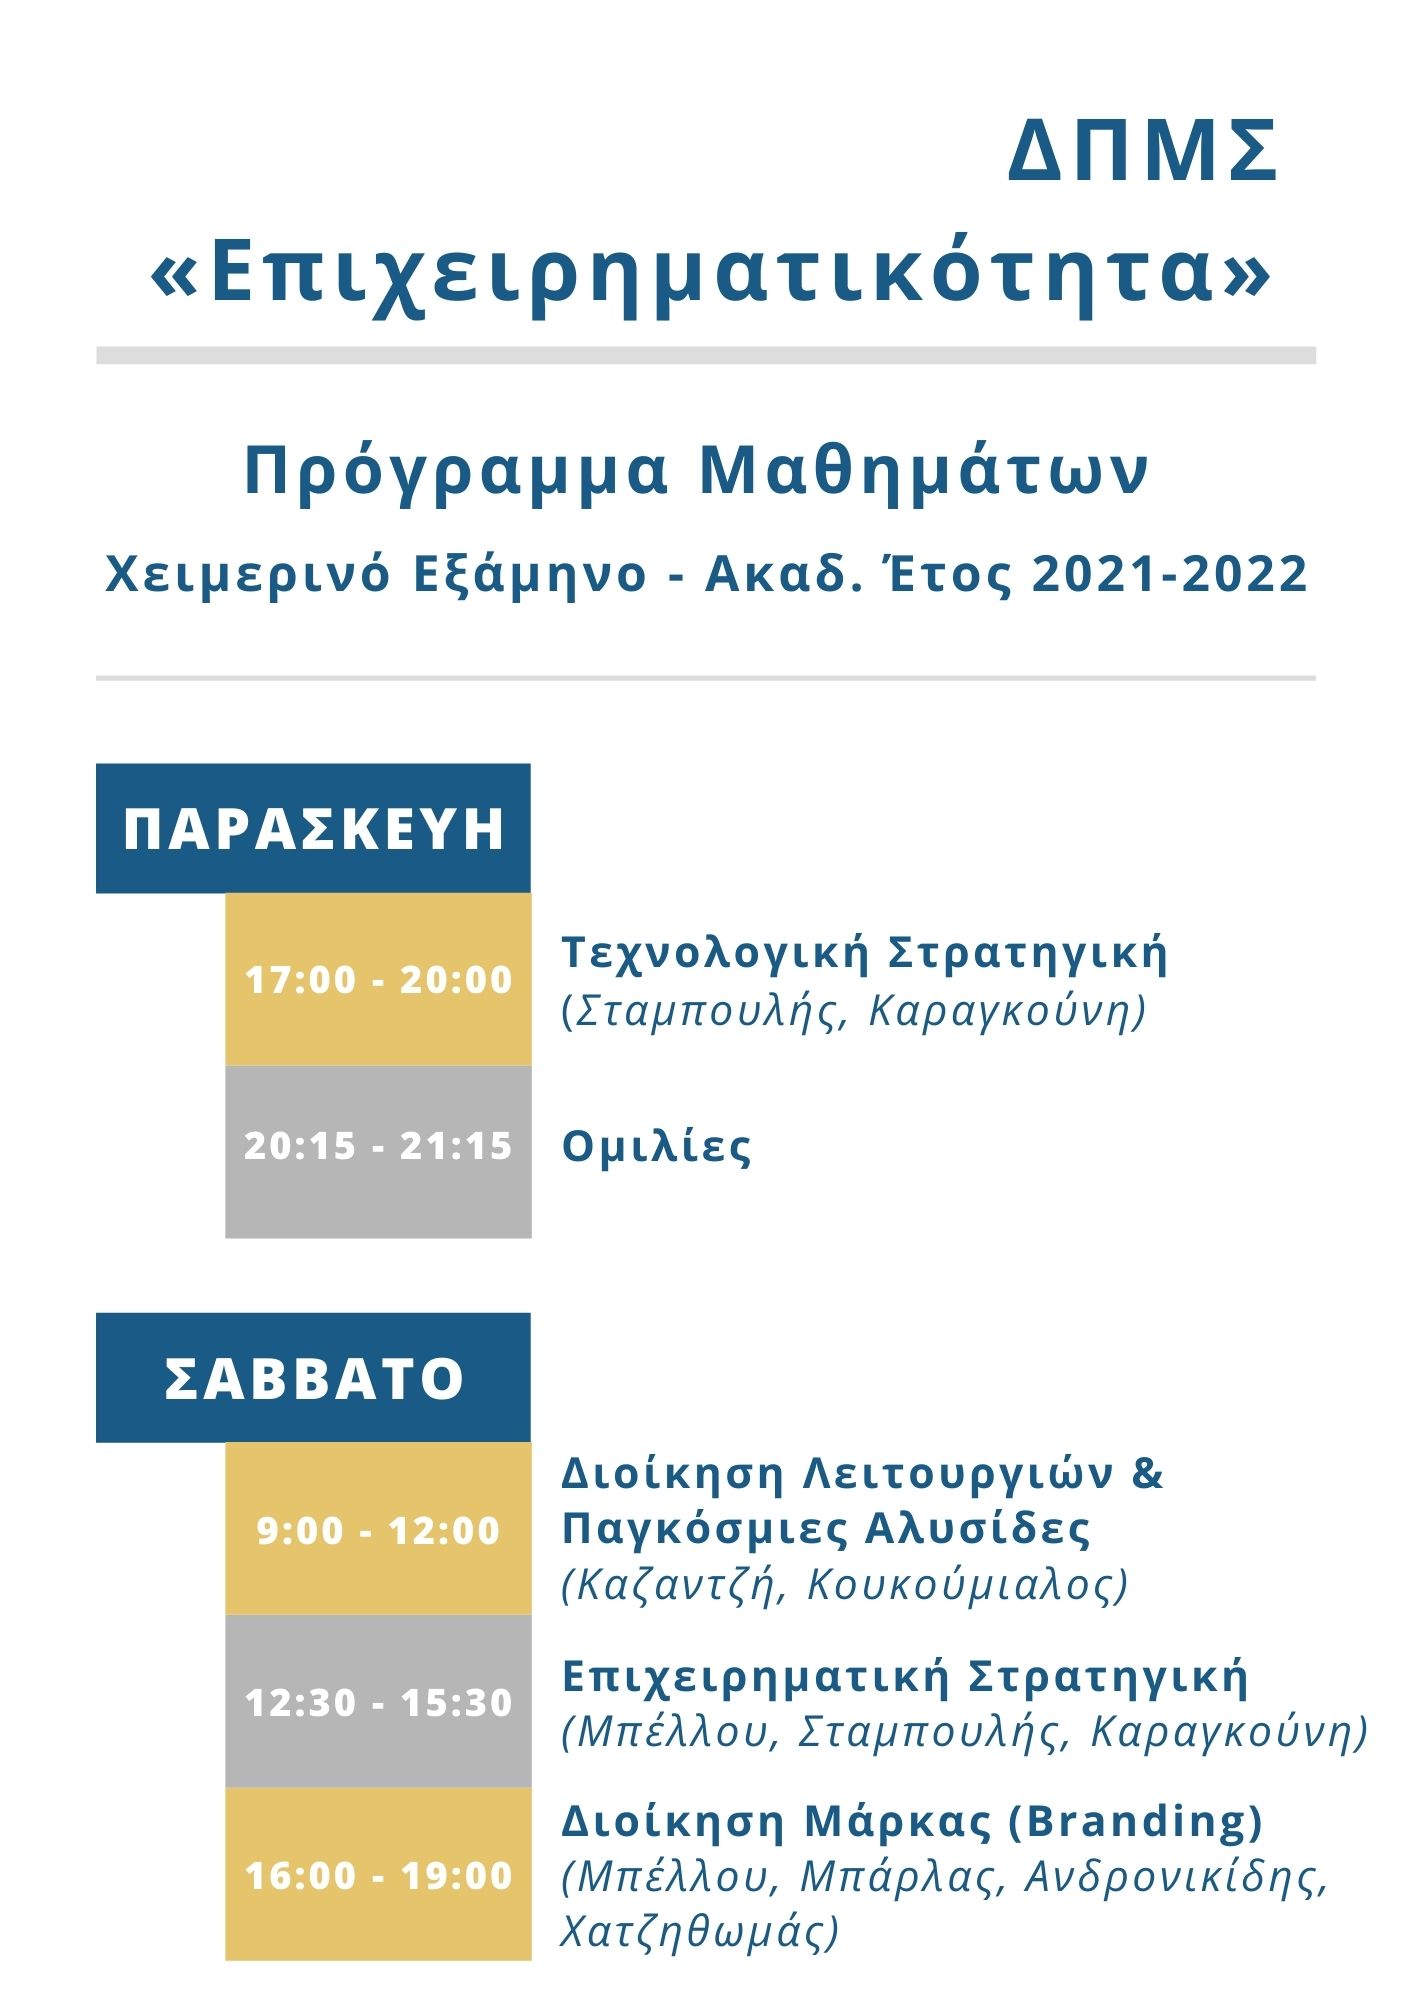 ΔΠΜΣ Επιχειρηματικότητα Προγράμματα Ακαδ. Έτος 2020 20211